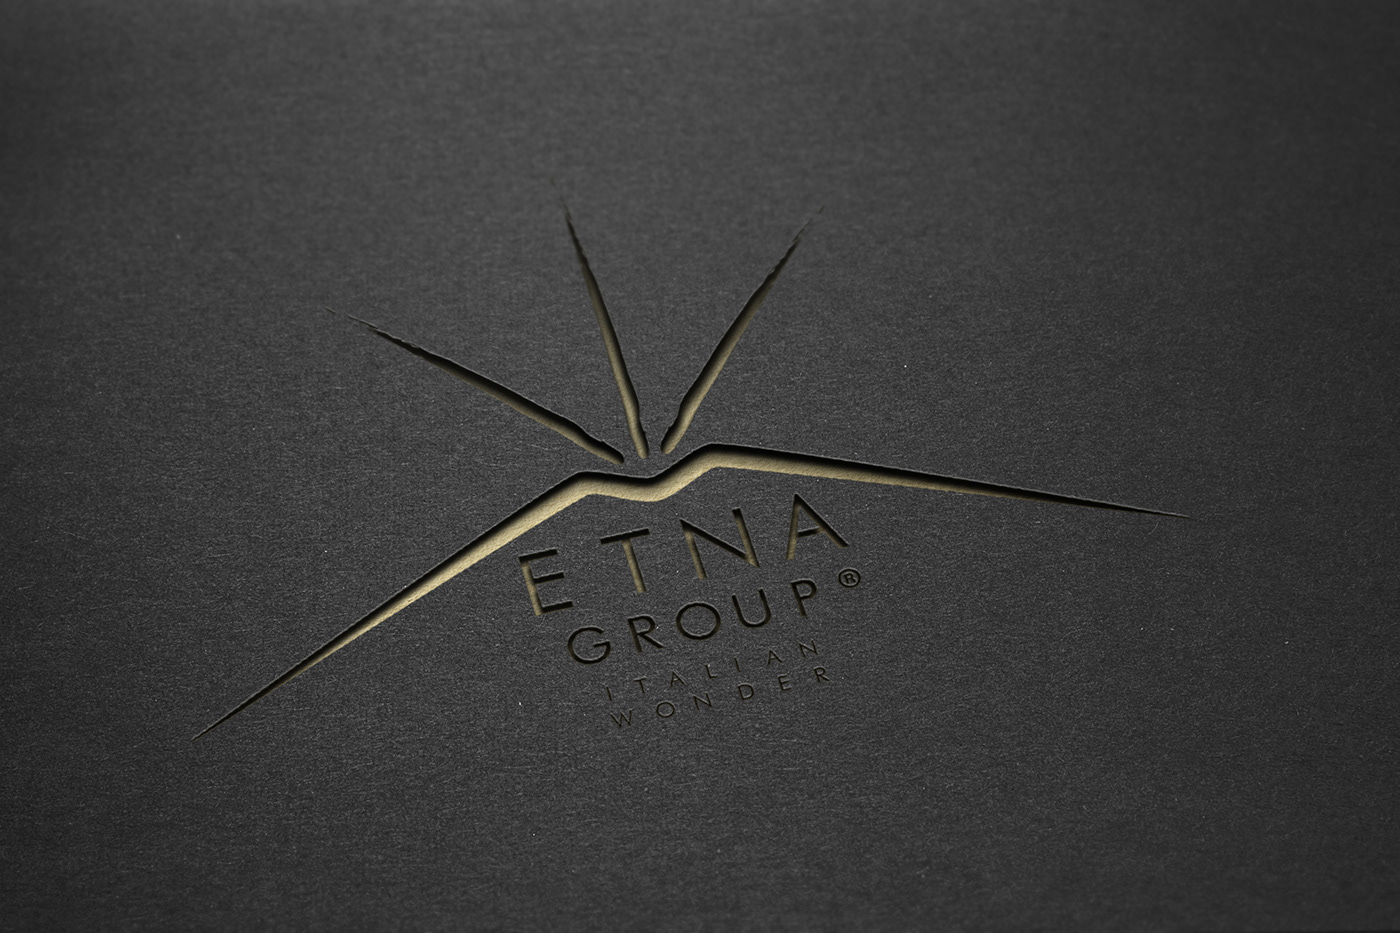 etna volcano logo branding 